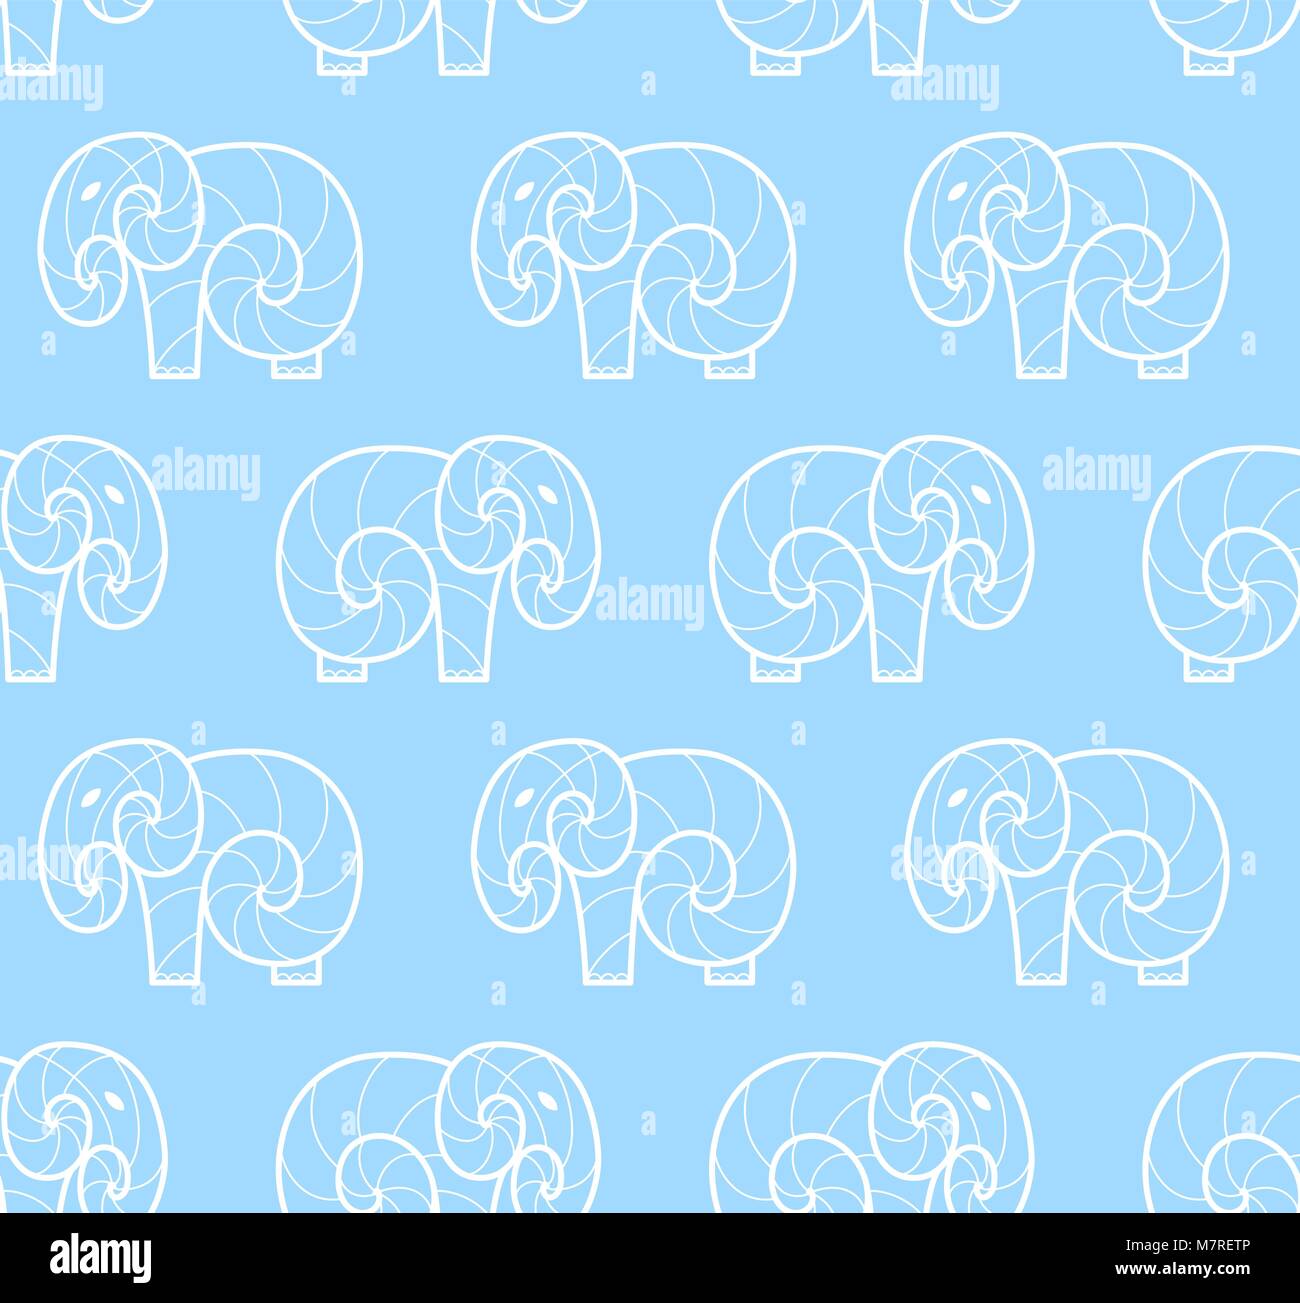 Modèle de vecteur seamless white elephant simple sur fond bleu. Line art design elephant Illustration de Vecteur